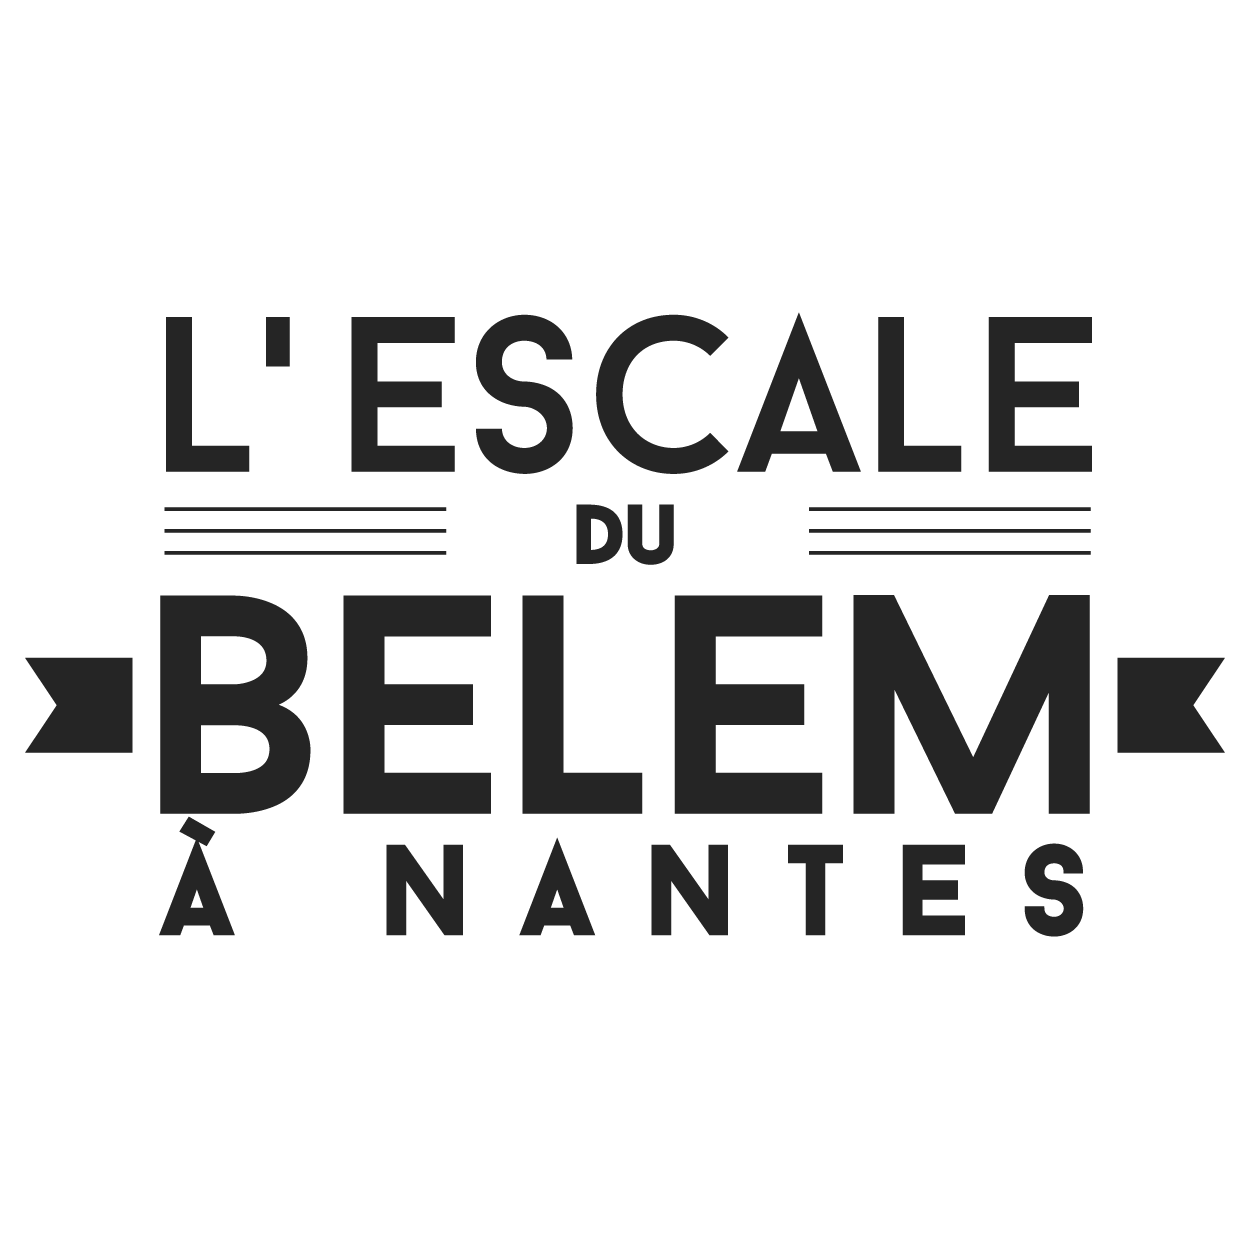 Les escales du @troismats_Belem à #Nantes, son port d'attache. //// COMPTE INACTIF ! //// 
Merci de suivre : @DebordDeLoire